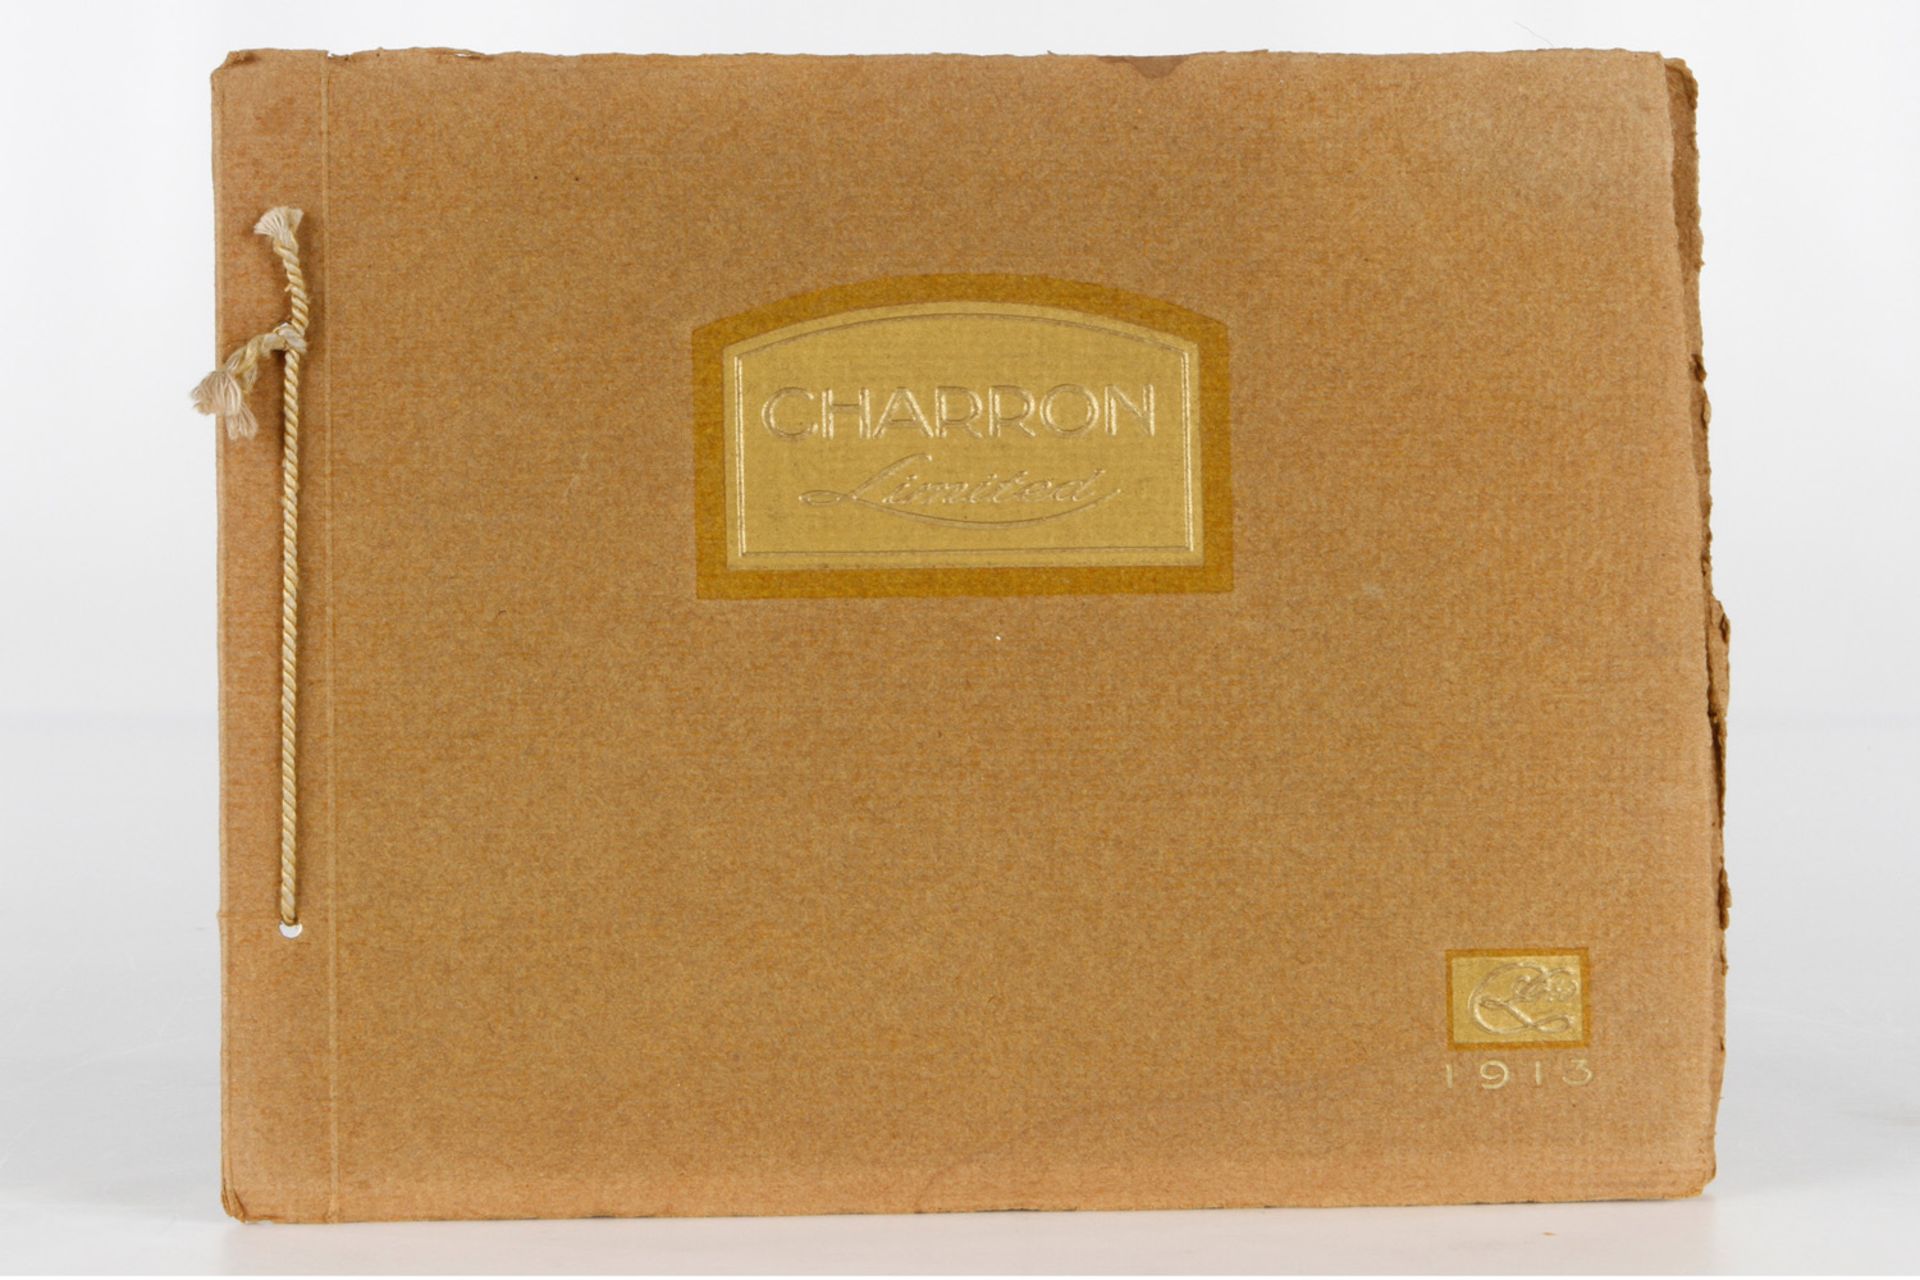 Autokatalog Charron LTD. von 1913, geprägter Einband aus hochw. Karton, 42 Seiten, leichte